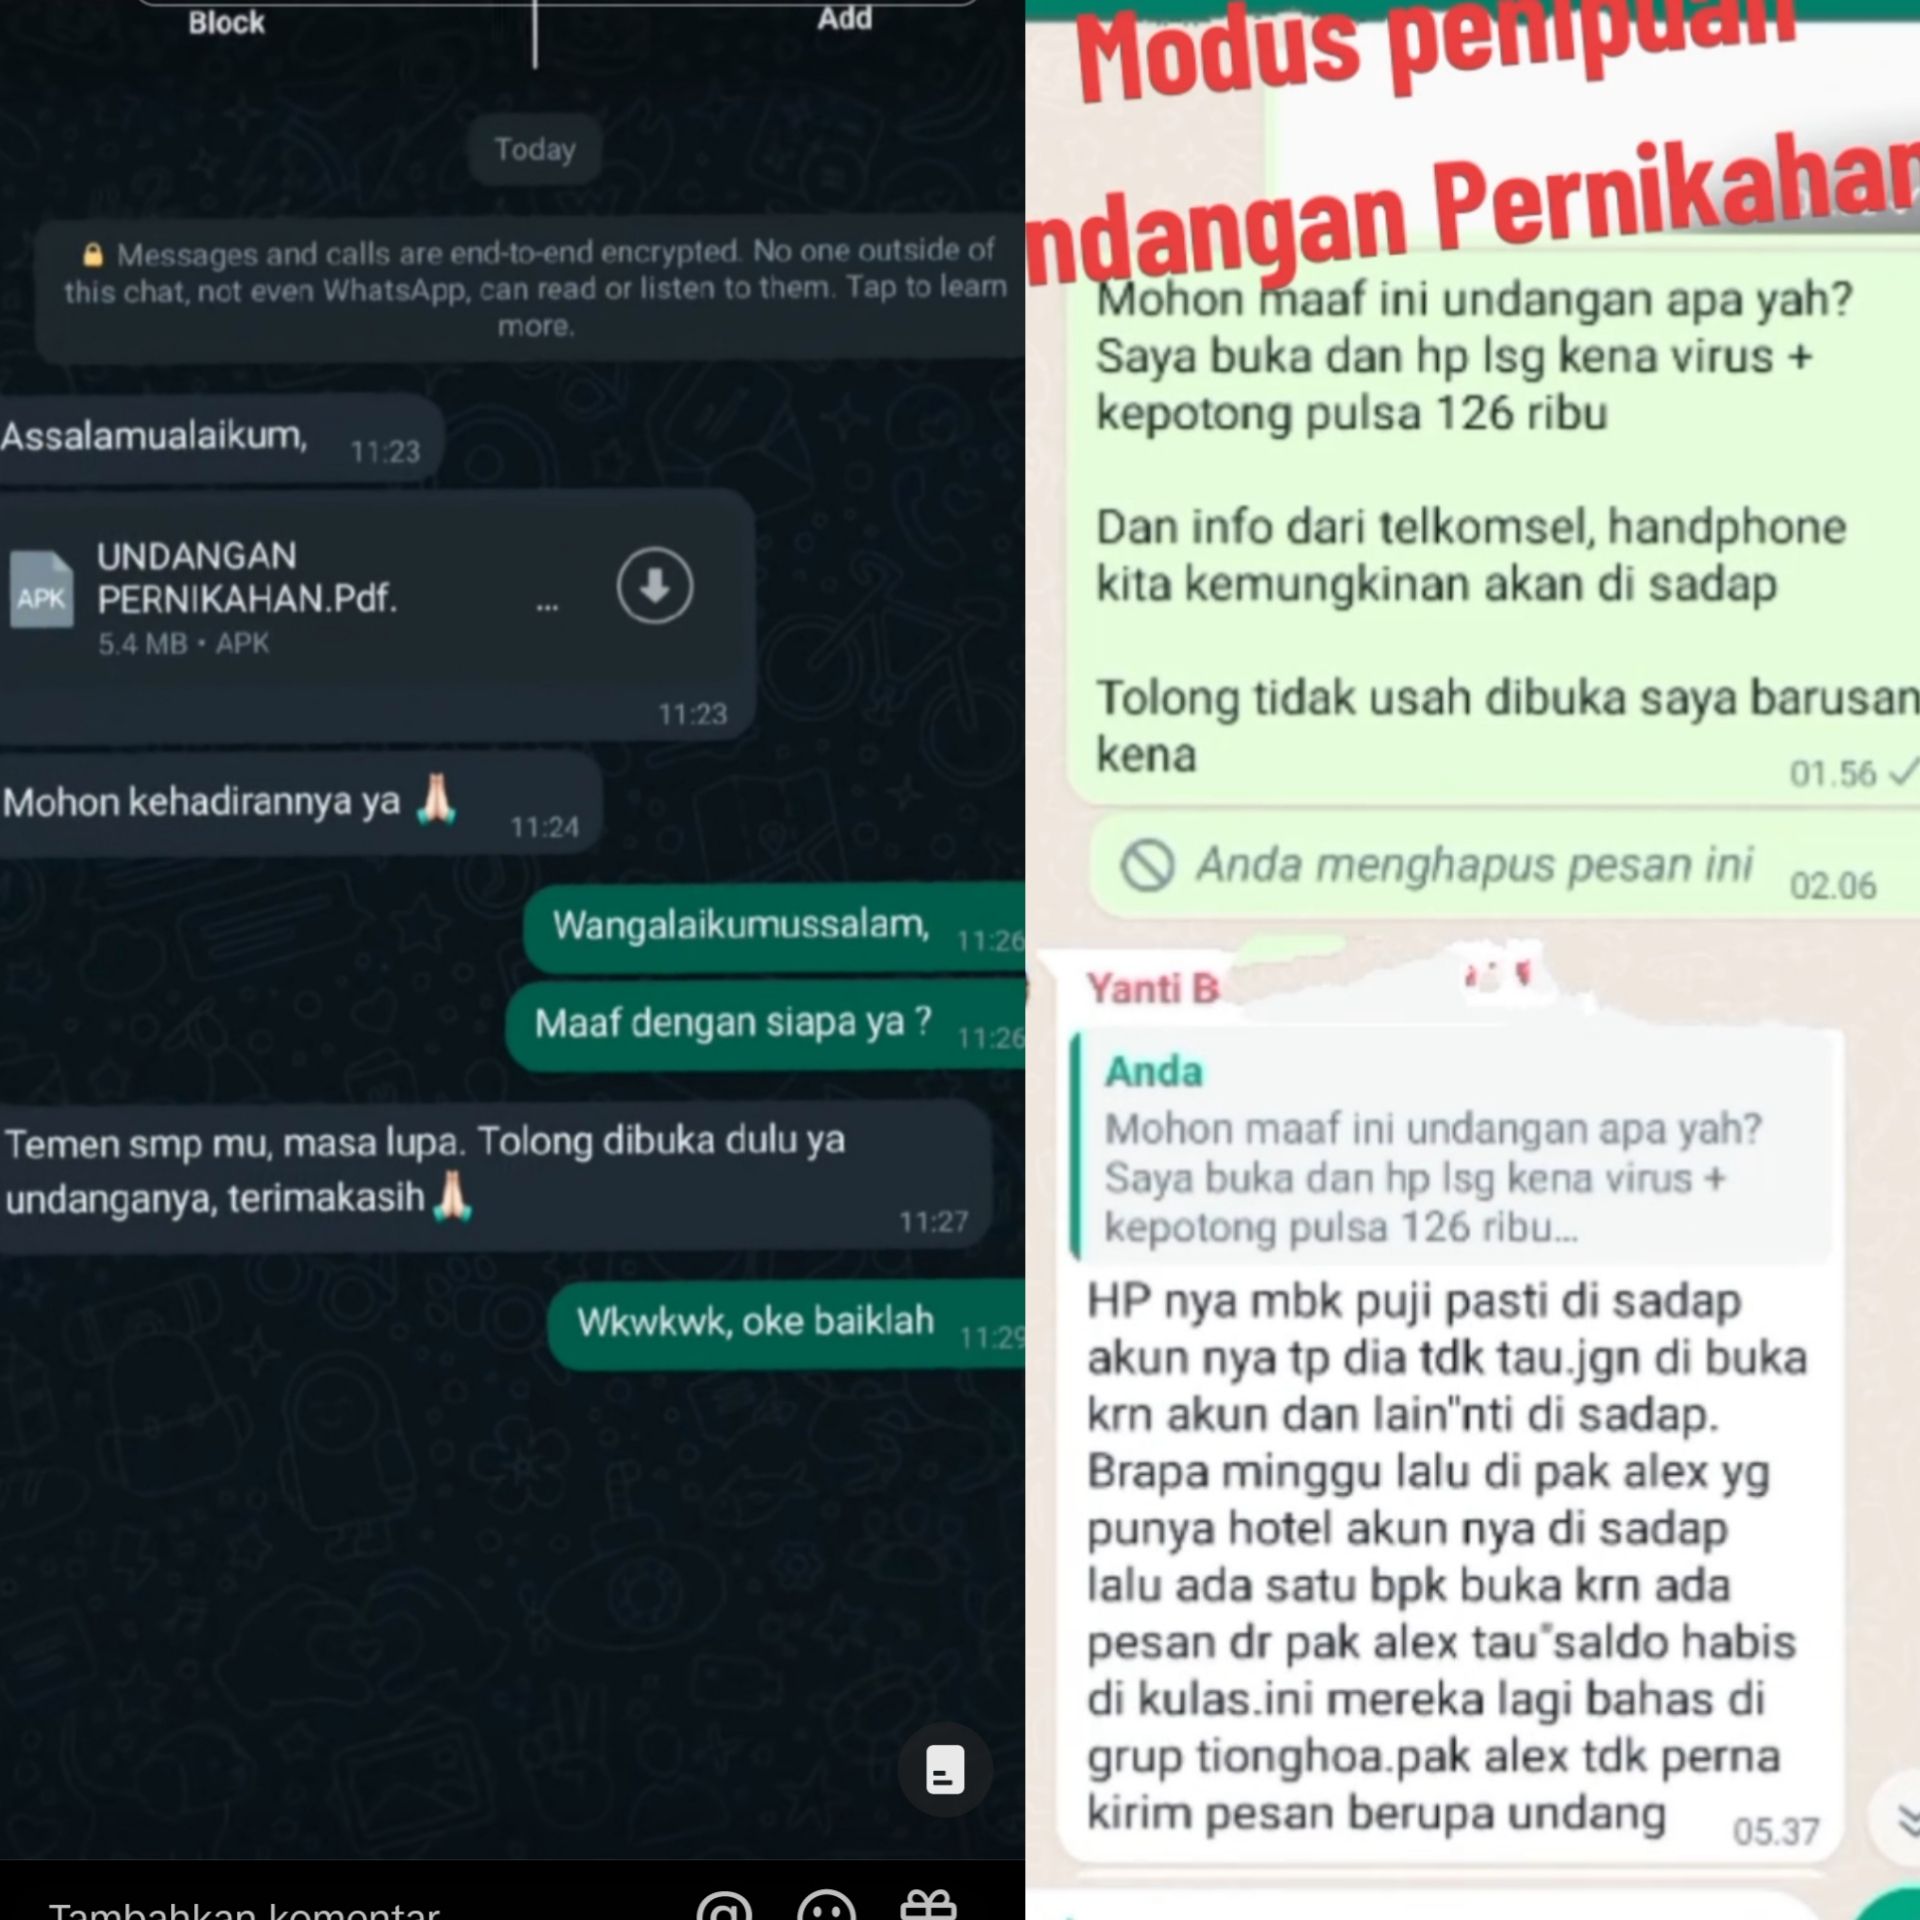 Modus terbaru penipuan lewat Undangan pernikahan yang dikirim lewat Whatsapp / Tiktok 